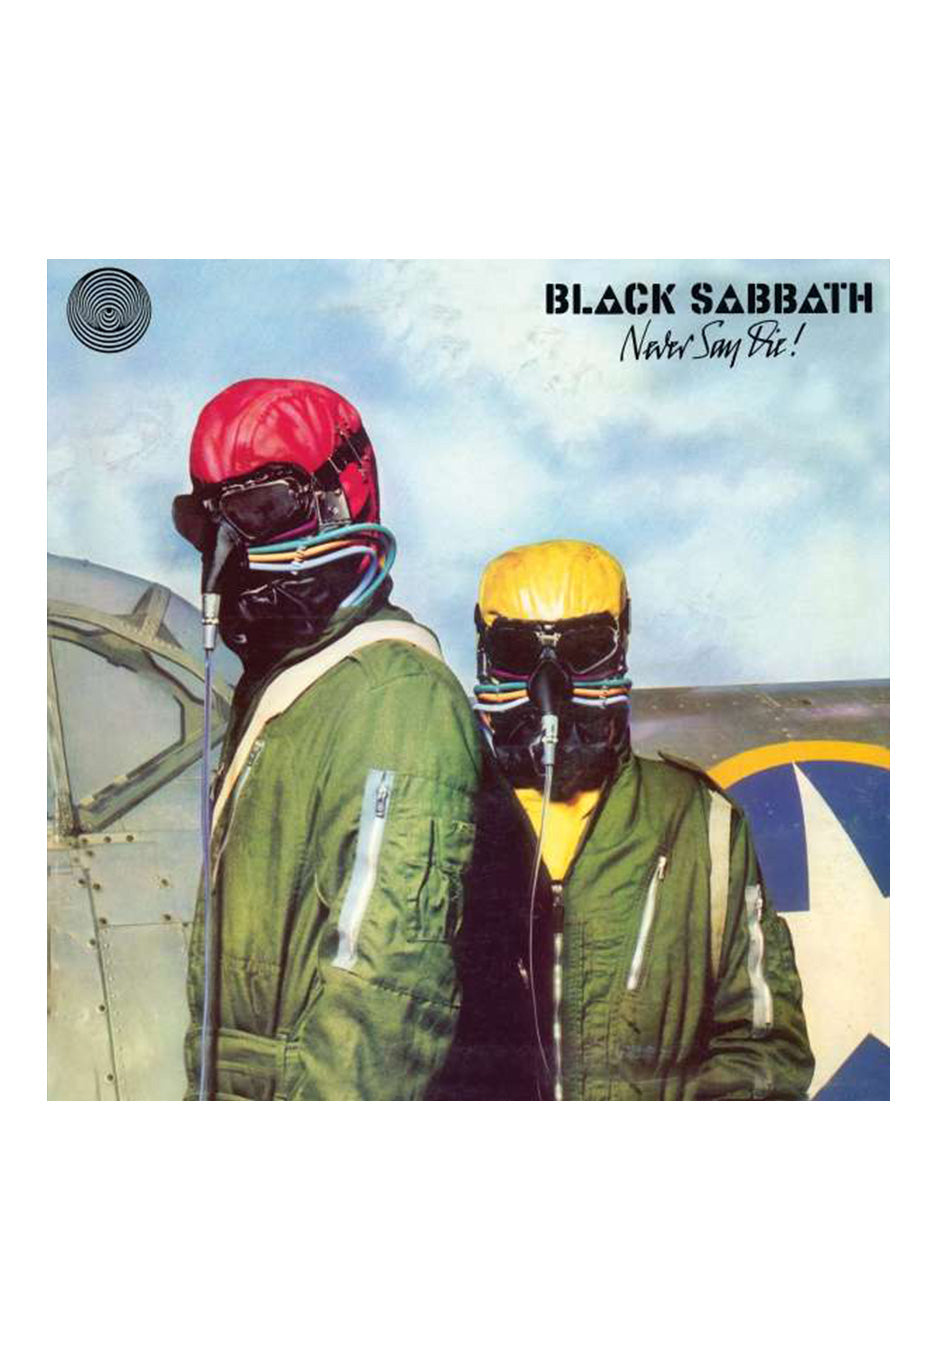 Black Sabbath - Never Say Die! - Vinyl